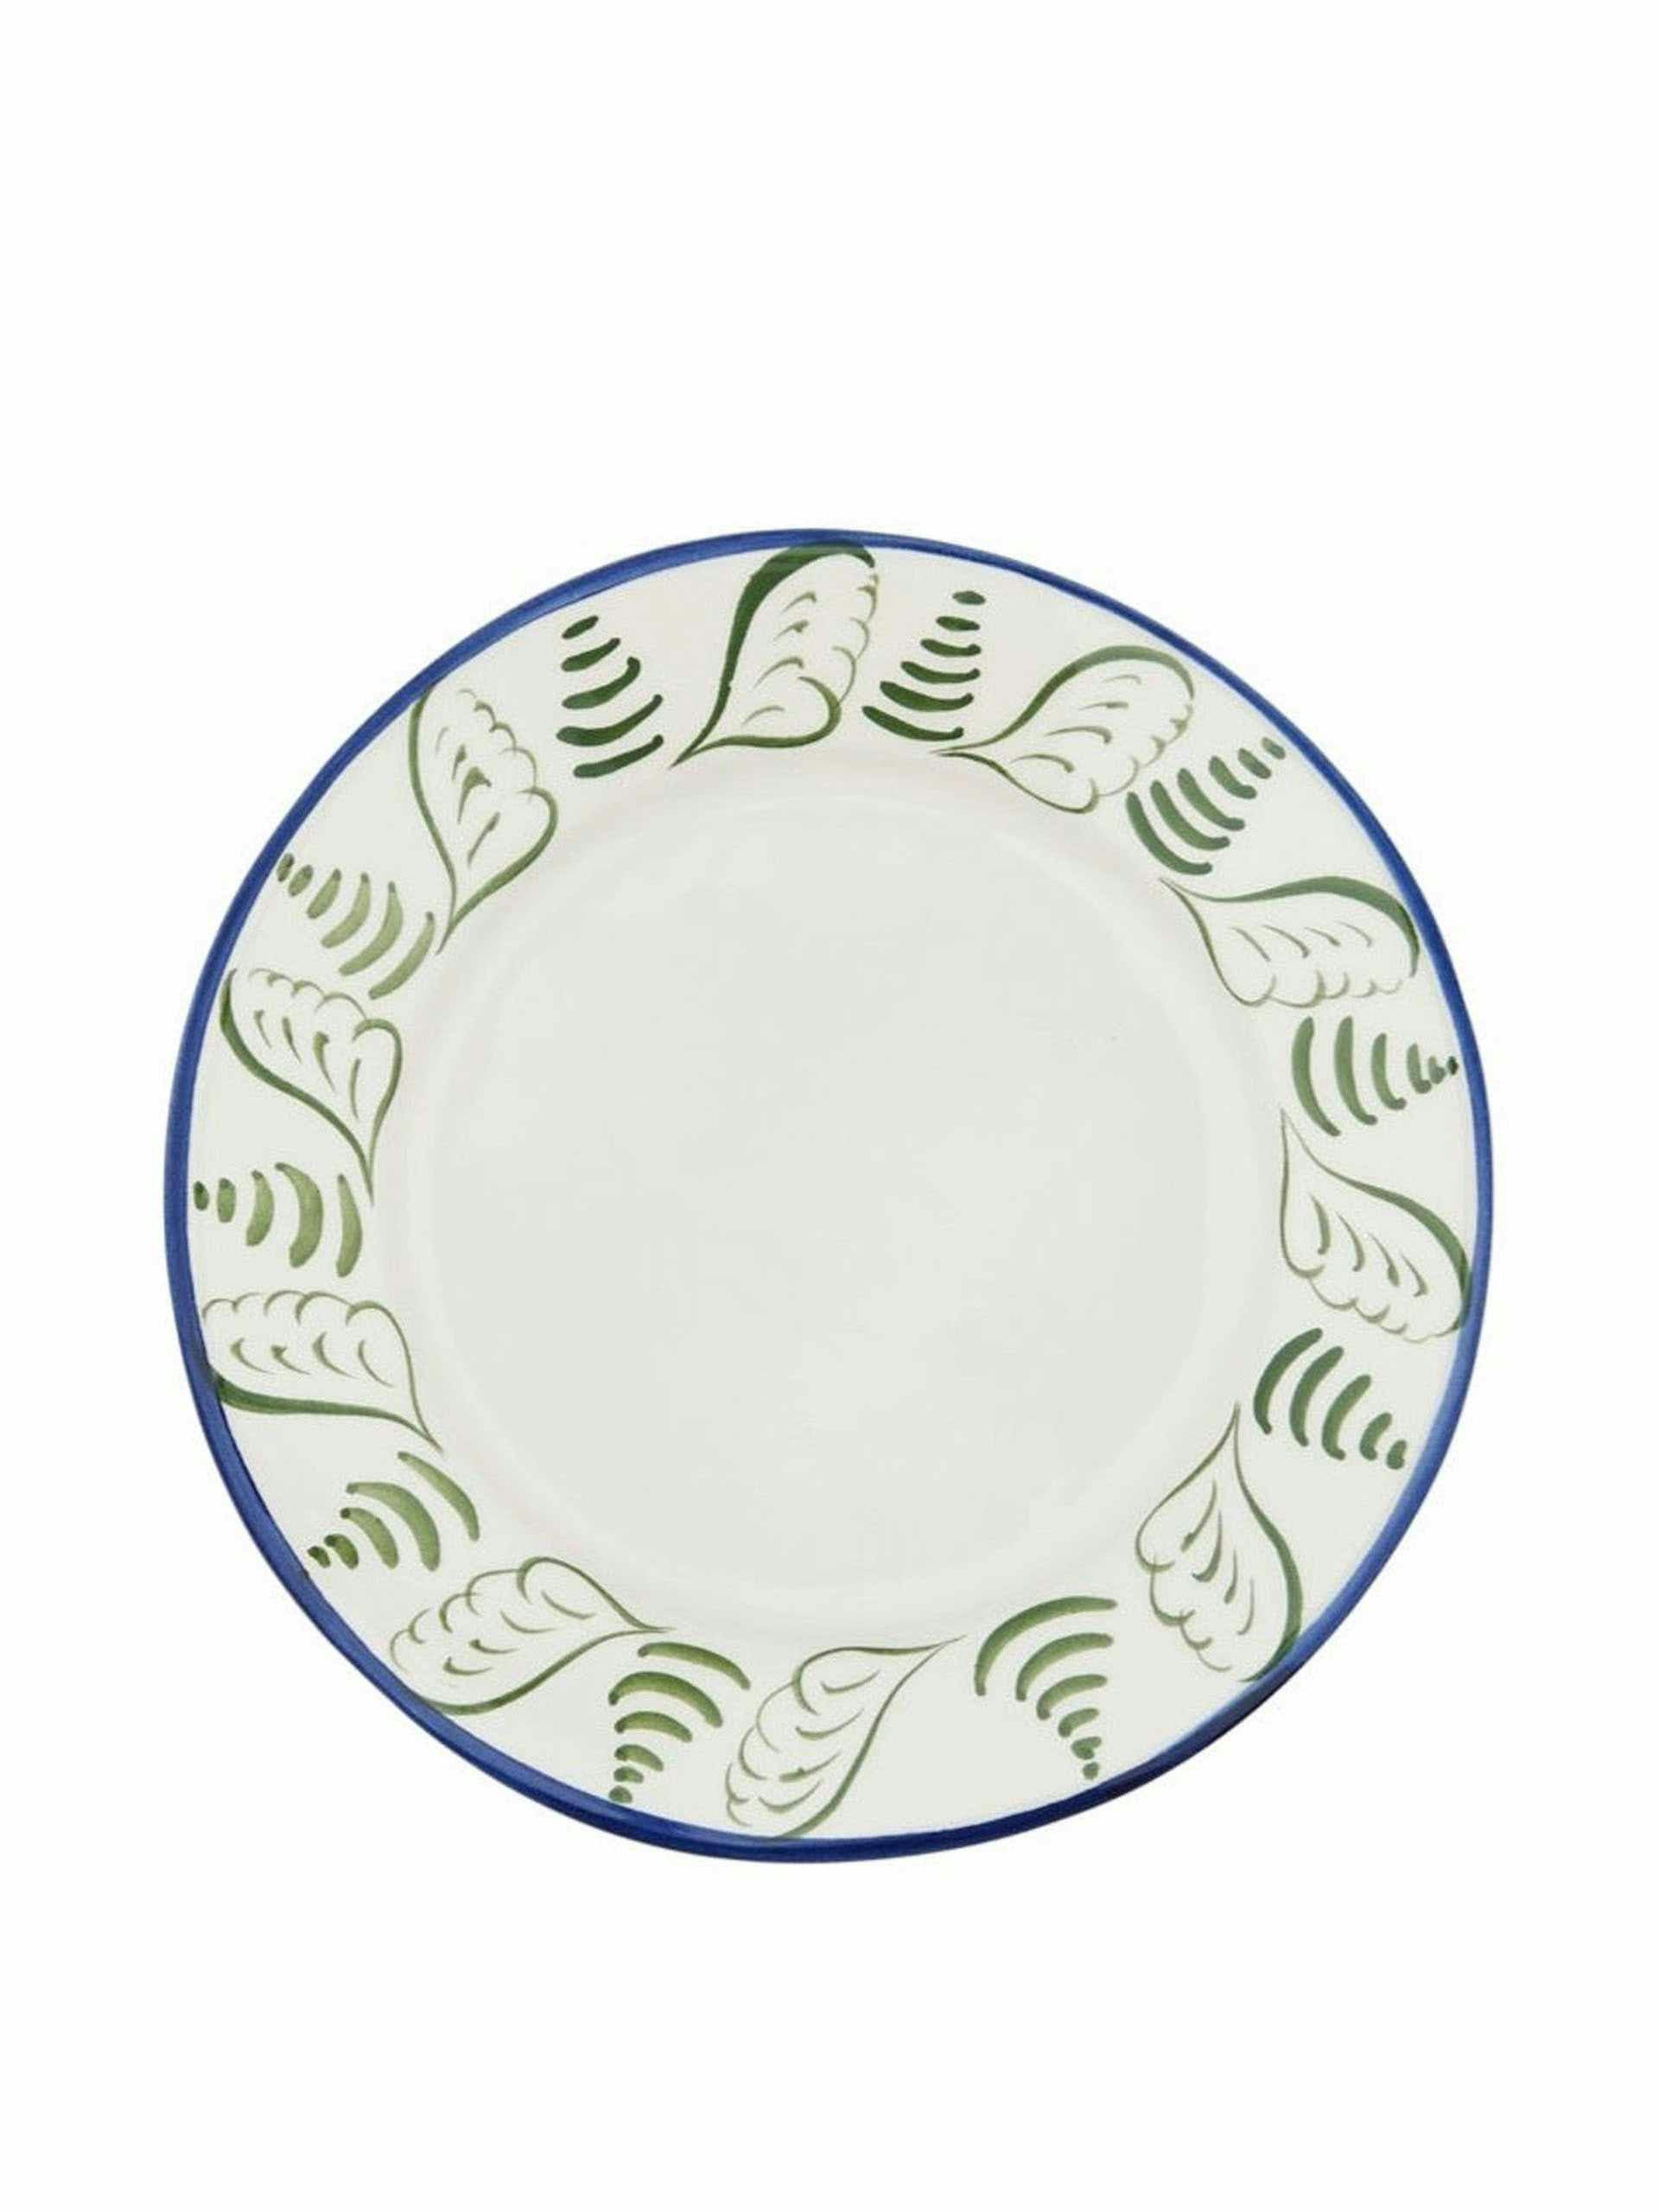 Blue and green granada ceramic small plate